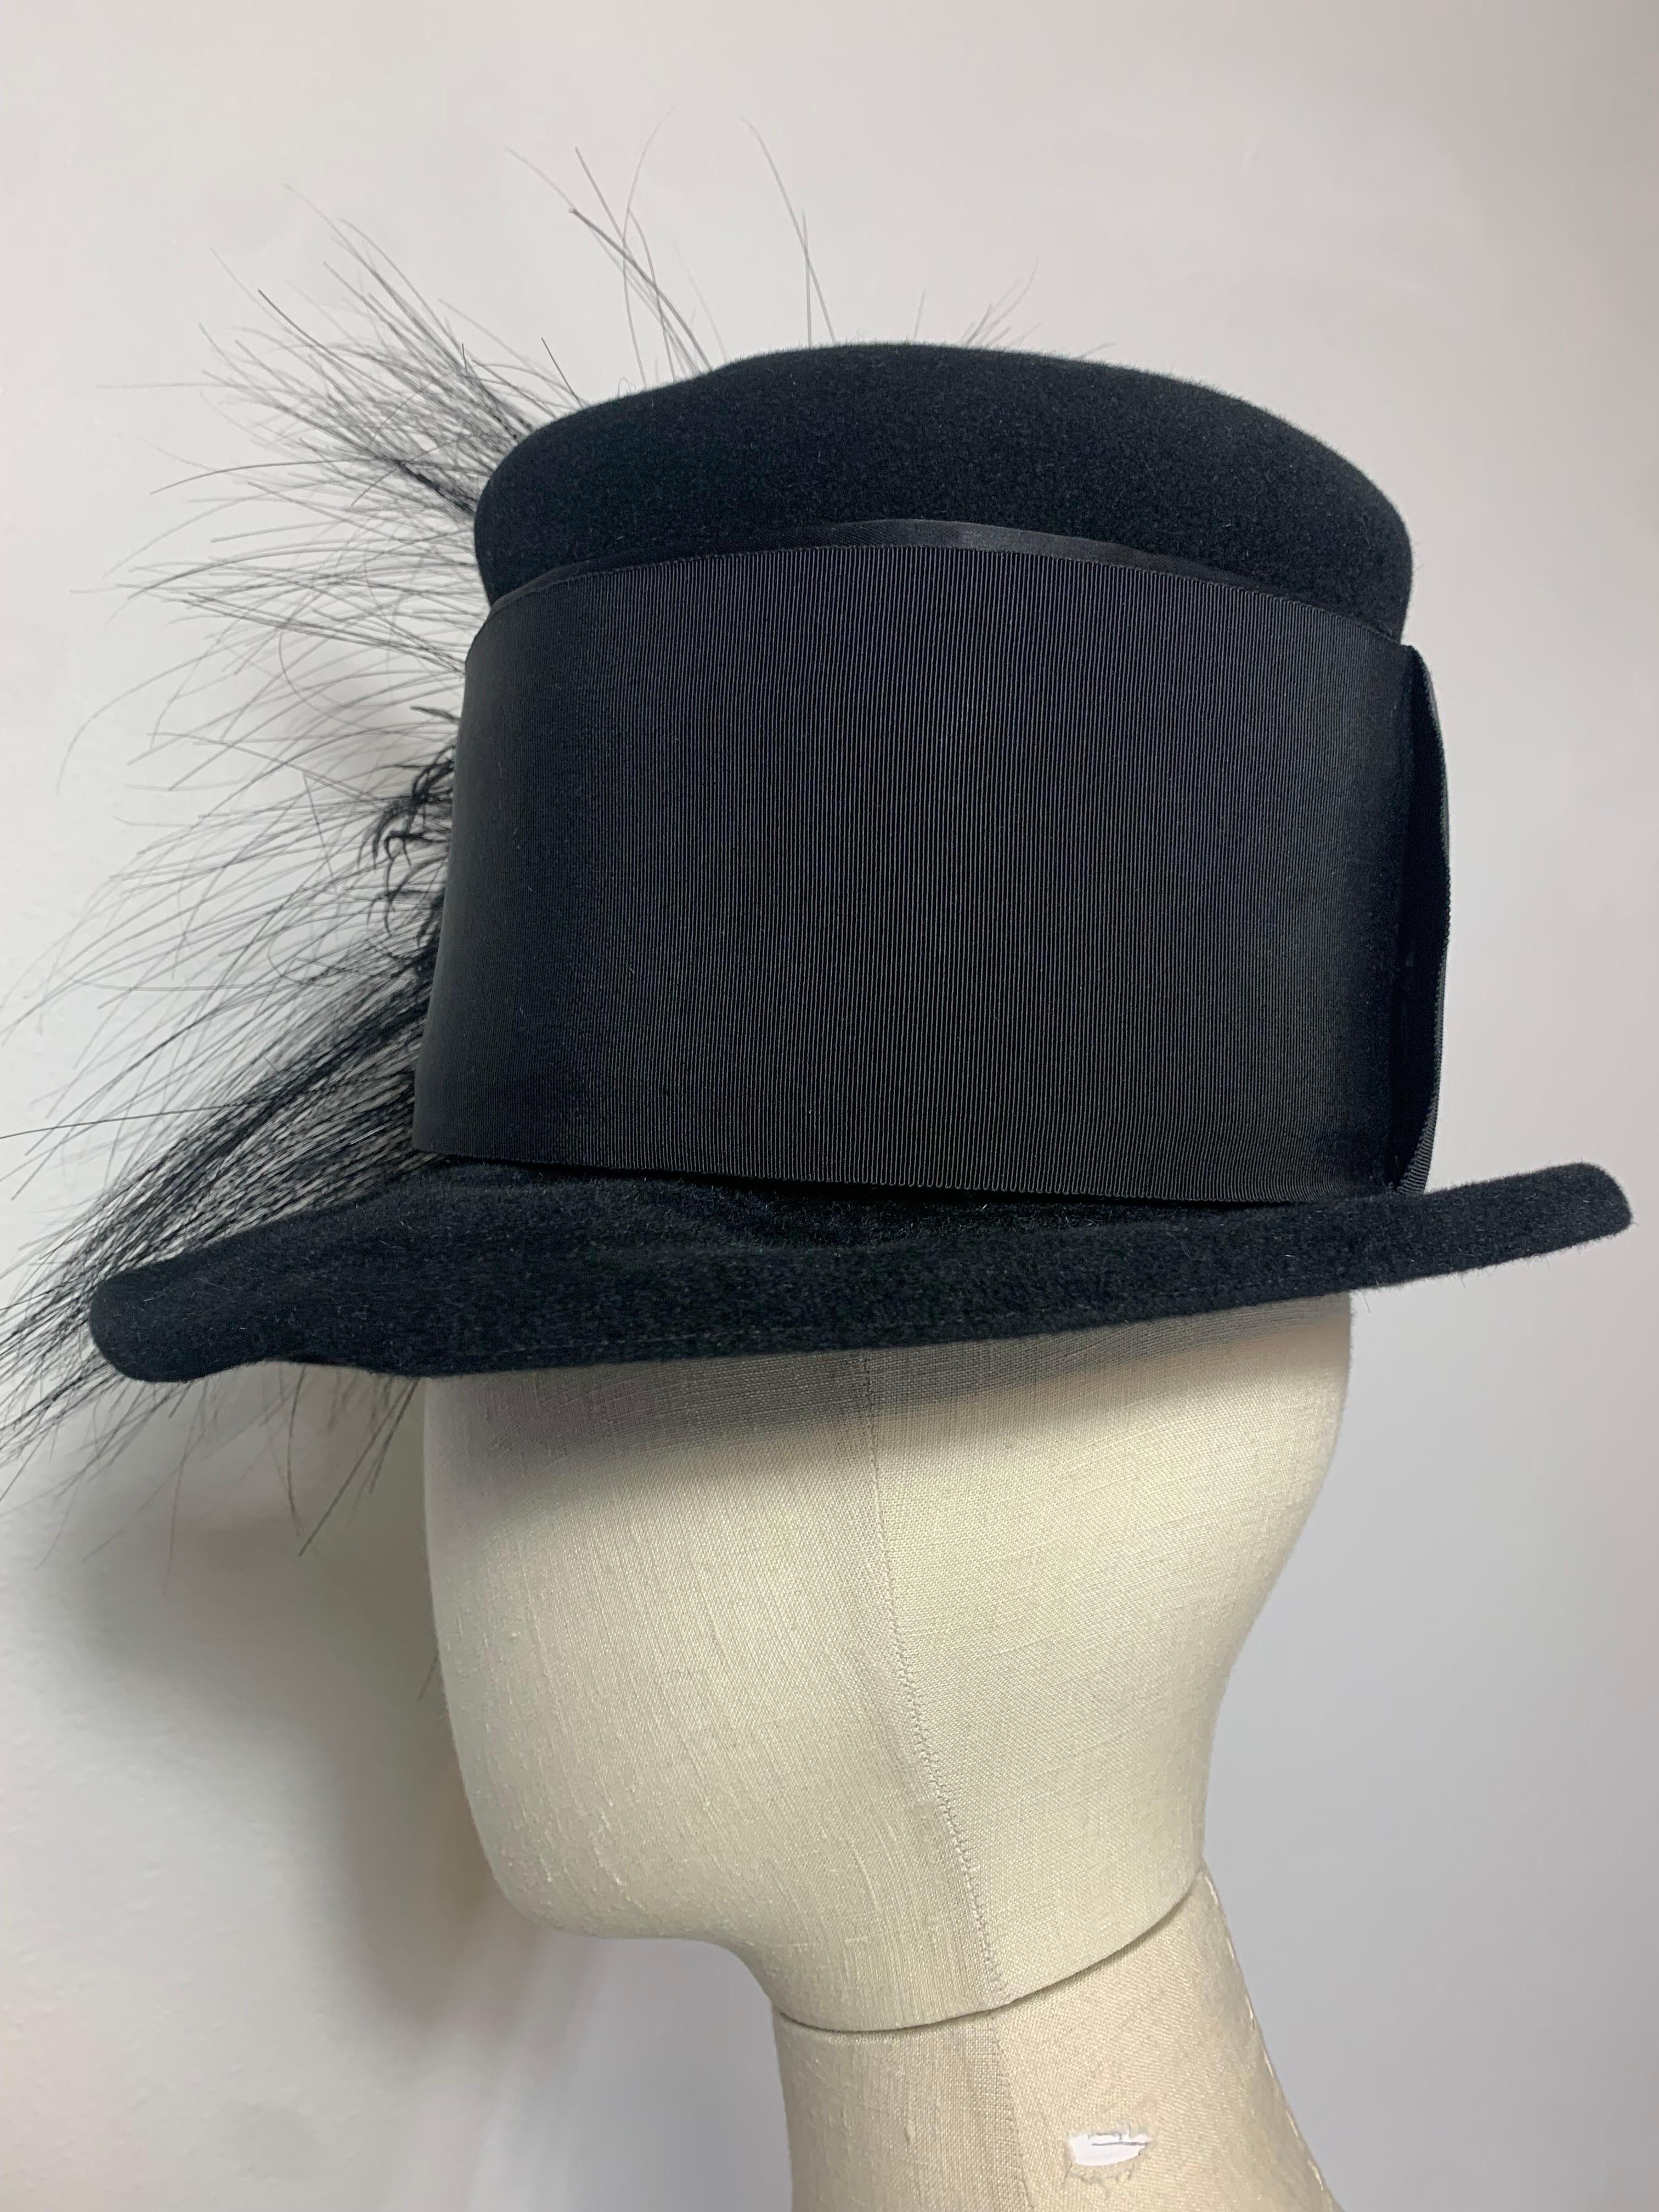 Maison Michel Black Fur Felt Short-Brim Tall Crown Hat w Extravagant Feathers  For Sale 2